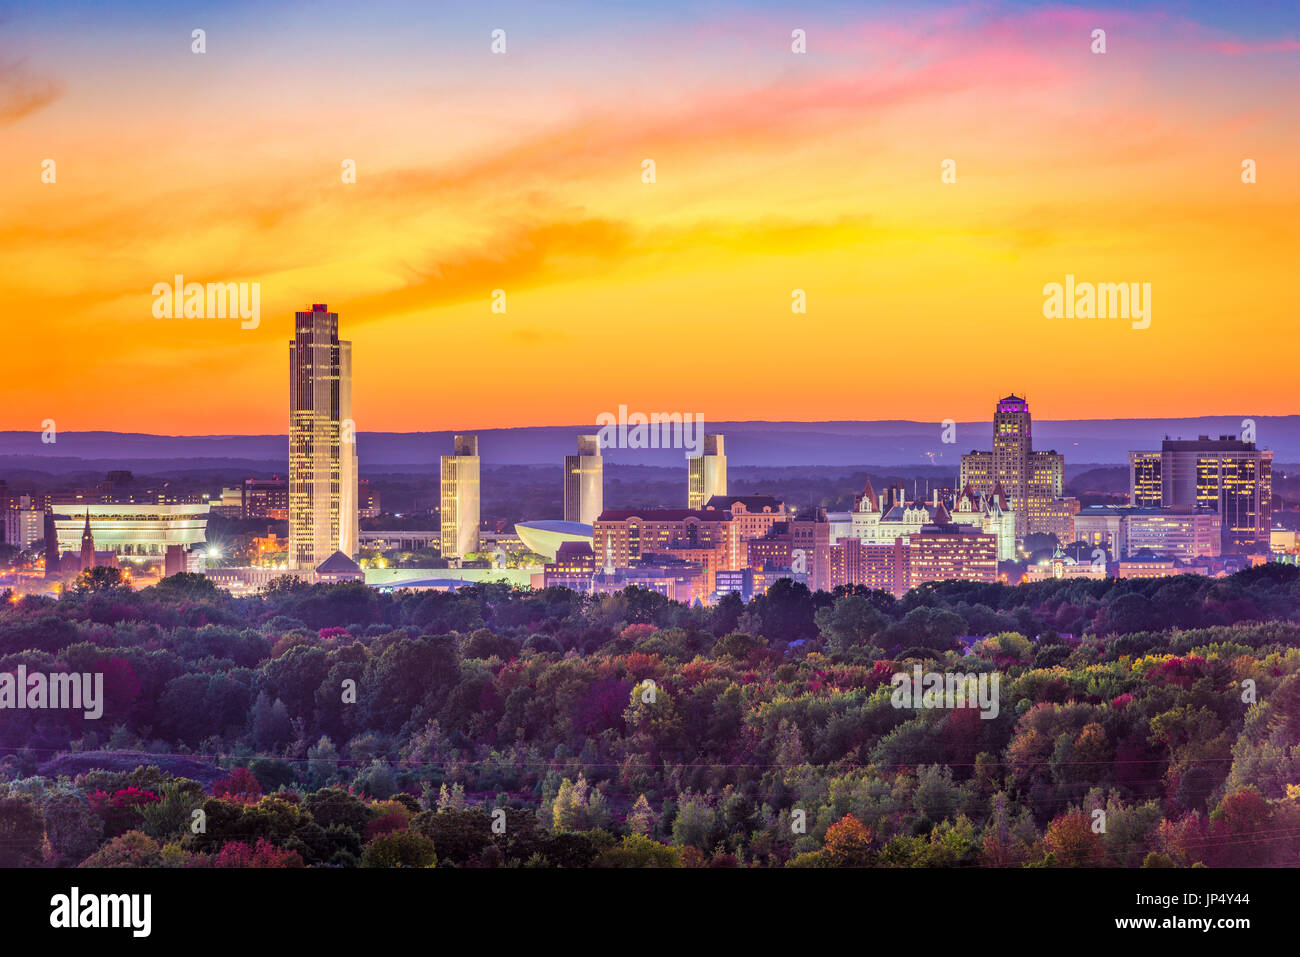 Albany, New York, USA city skyline at dusk. Stock Photo